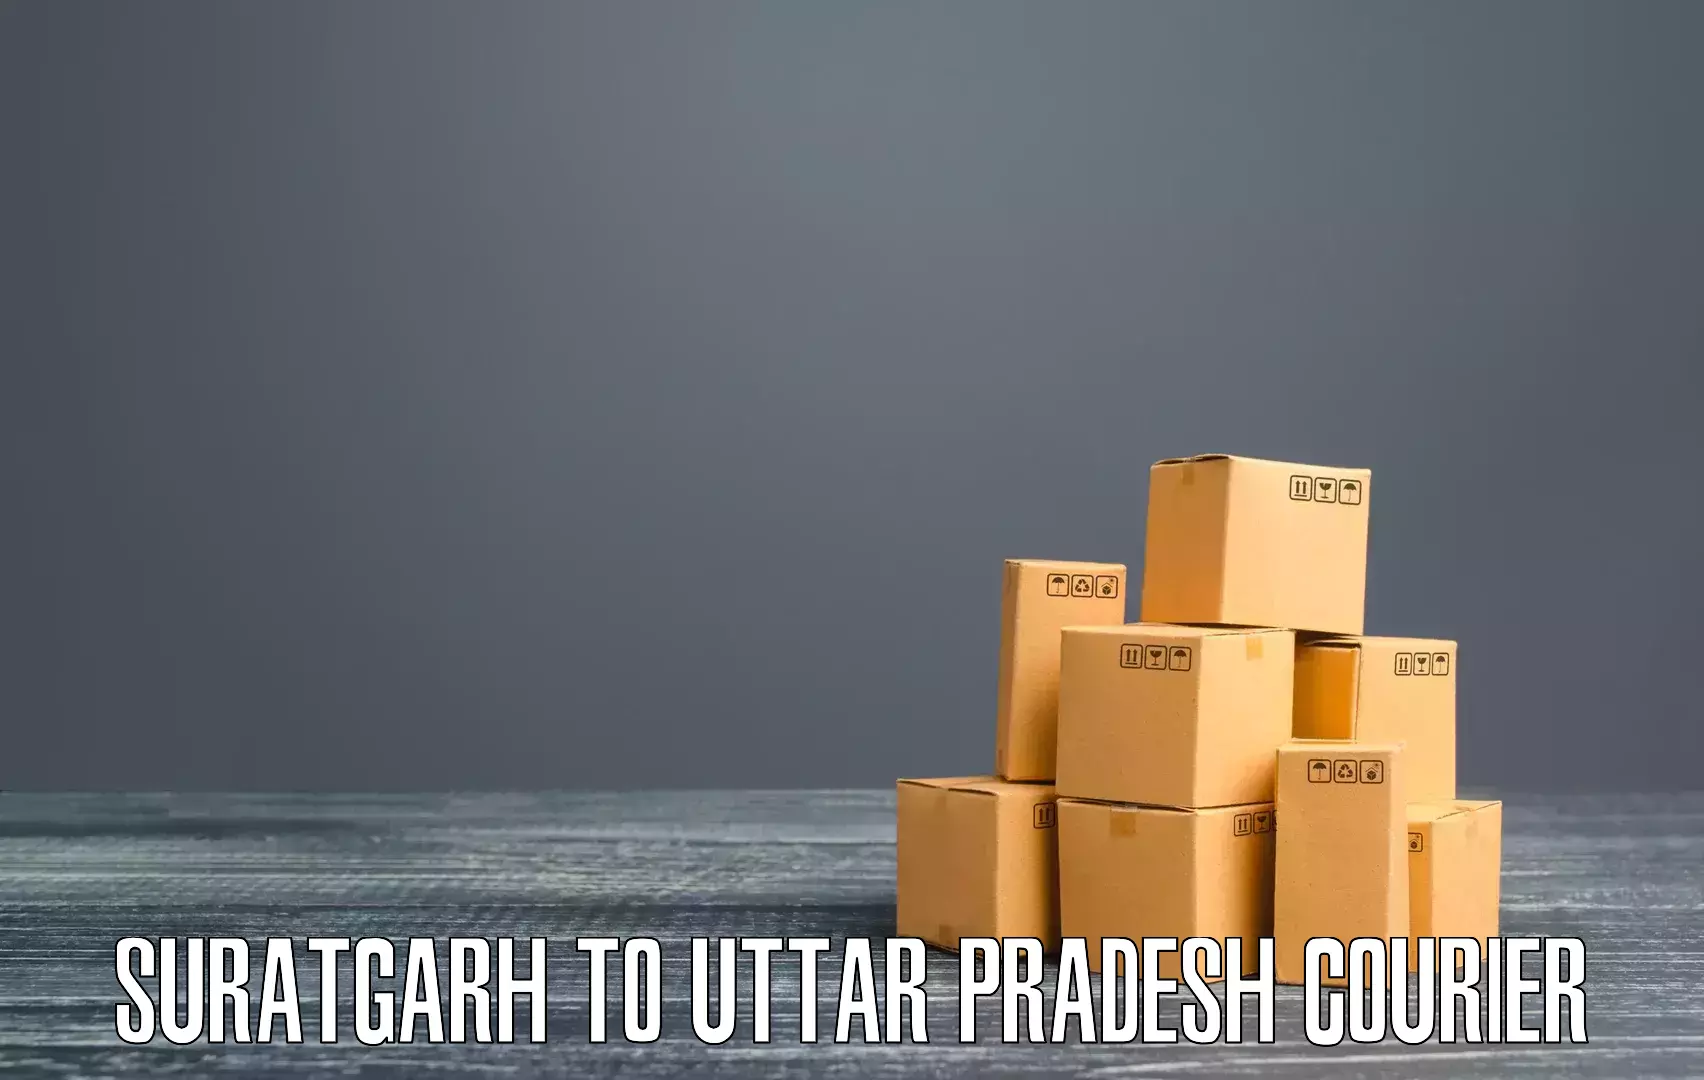 Domestic courier Suratgarh to Prayagraj